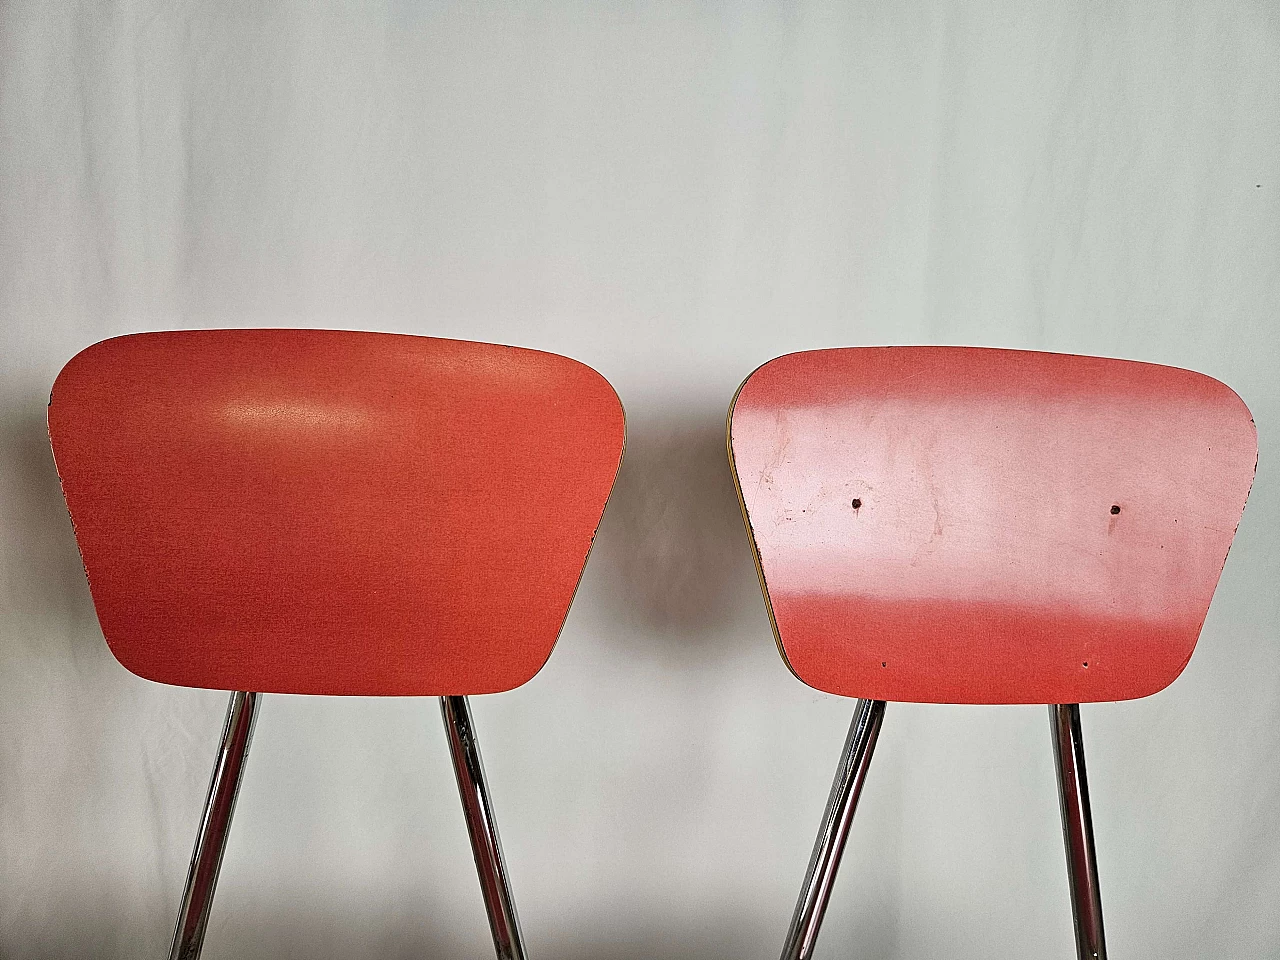 4 Sedie e tavolo in formica rossa con struttura in ferro, anni '70 25